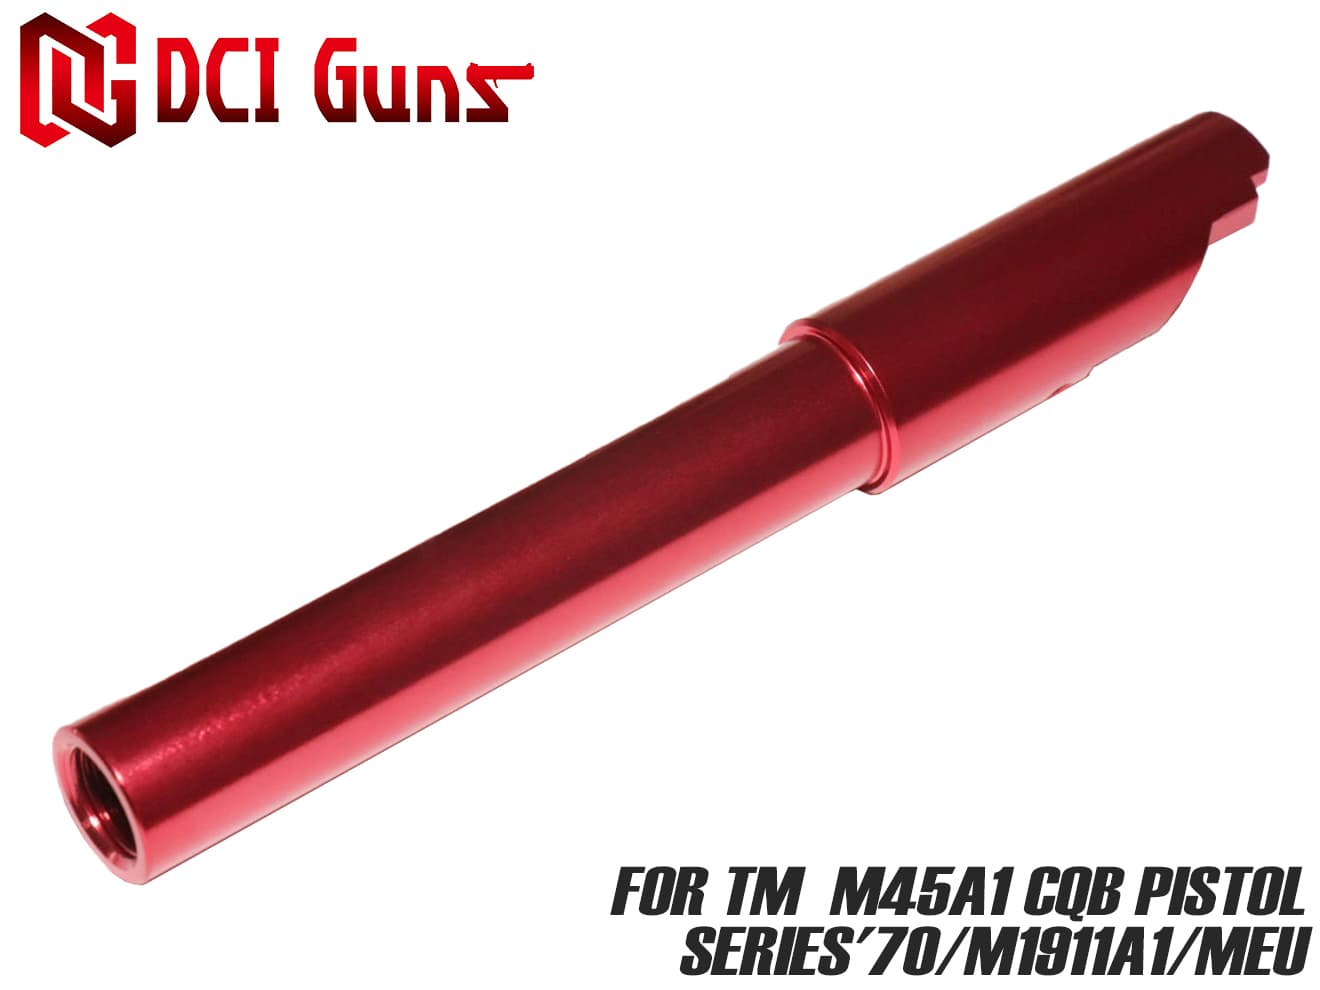 DCI-GBOB-006S DCI Guns 11mm正ネジメタルアウターバレル マルイ M45A1 